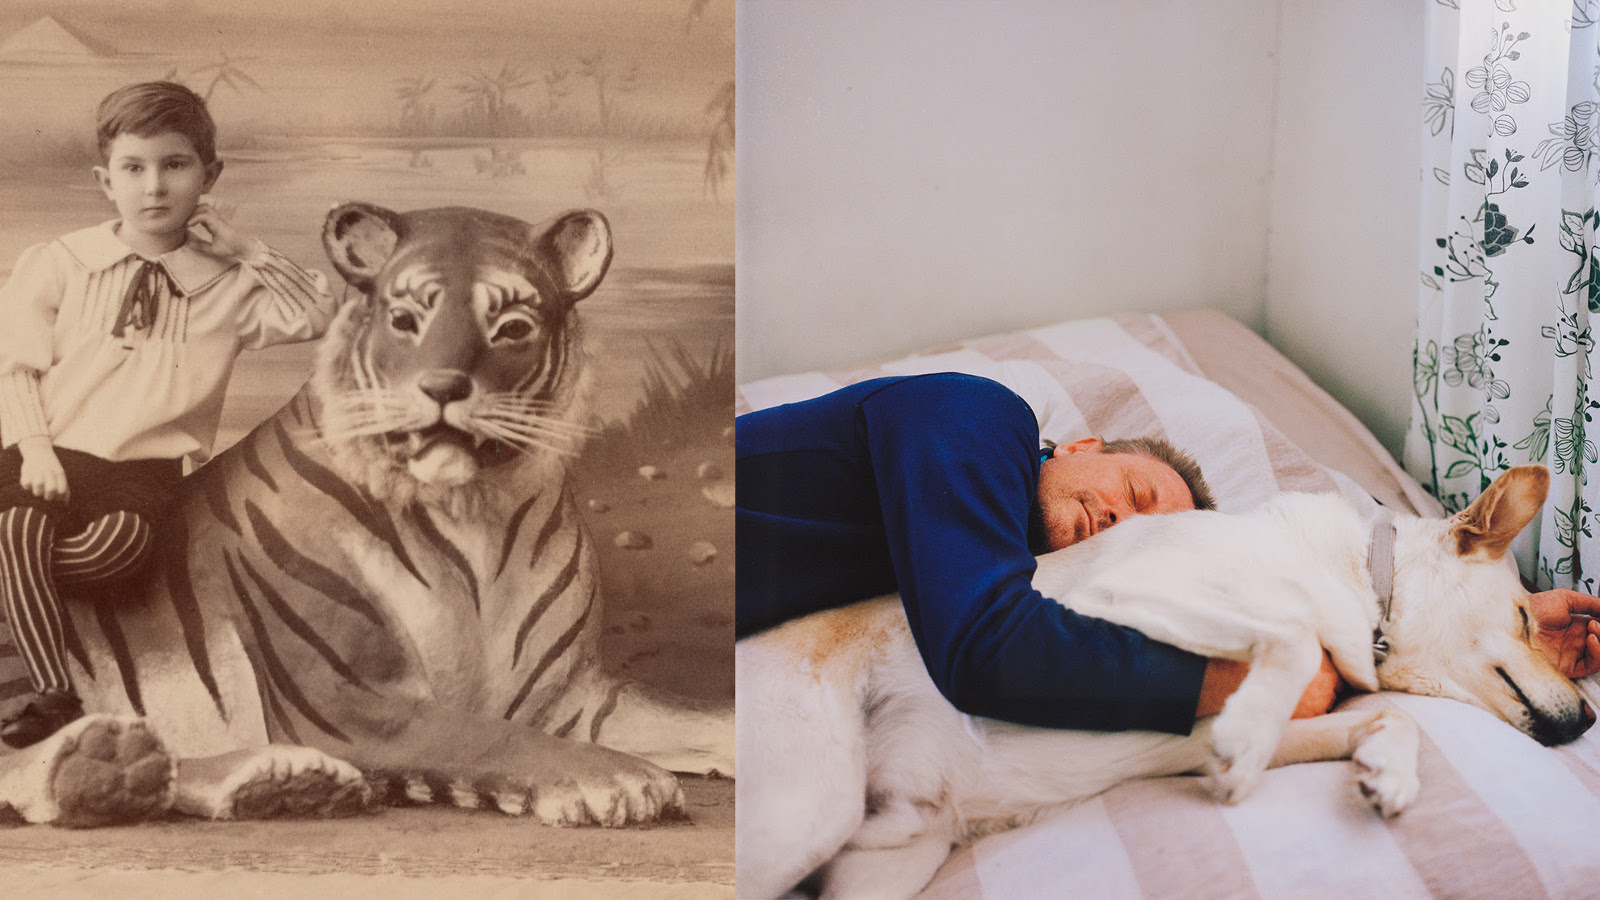 Kuvassa on pikkupoika joka istuu tiikeri vieressään.  Toisessa kuvassa on mies nukkumassa sängyssä lakanoiden välissä ja hänen vieressään on valkoinen suuri koira.